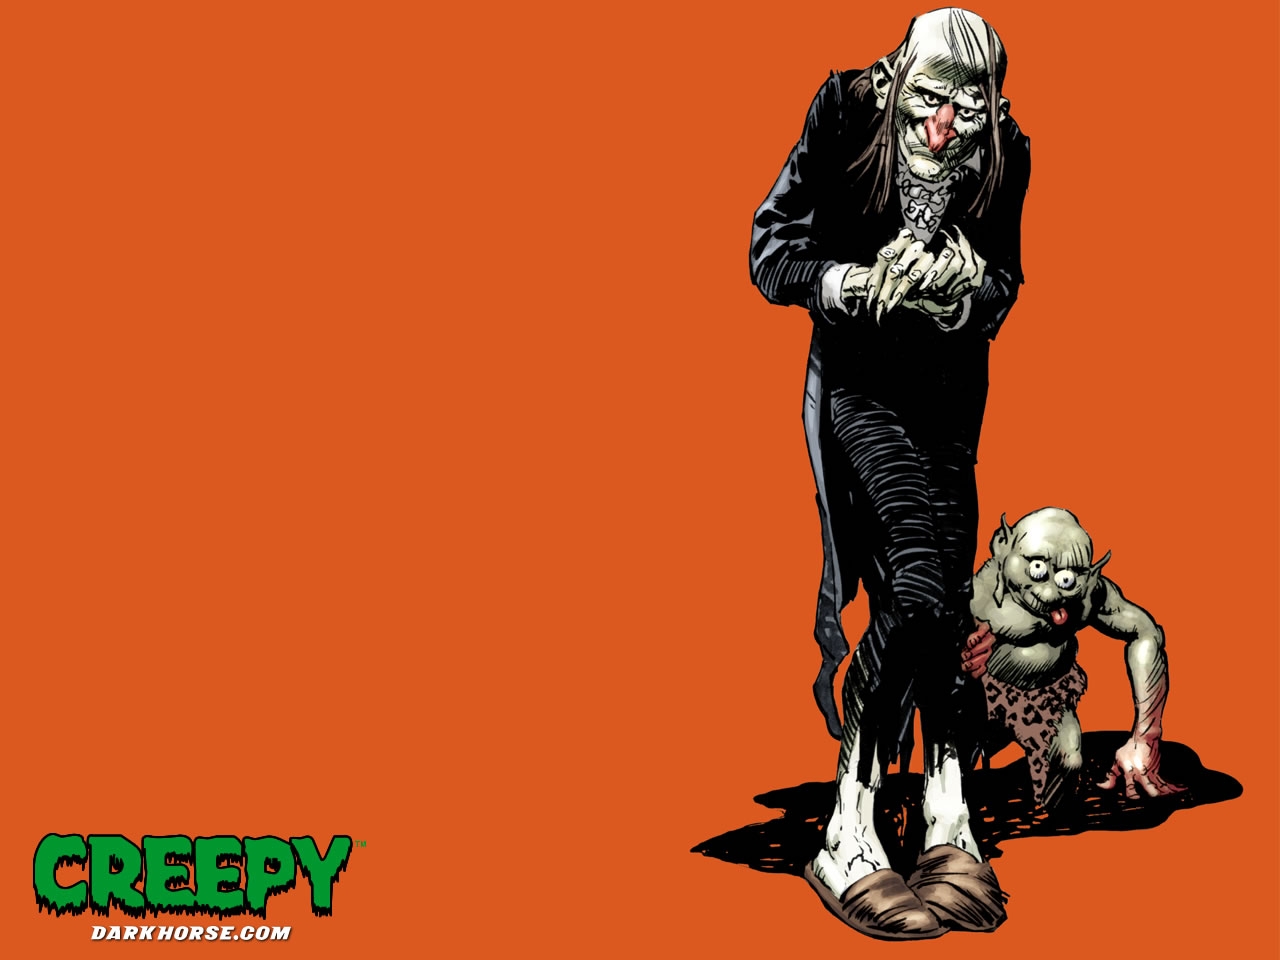 Creepy Comics 1280x960